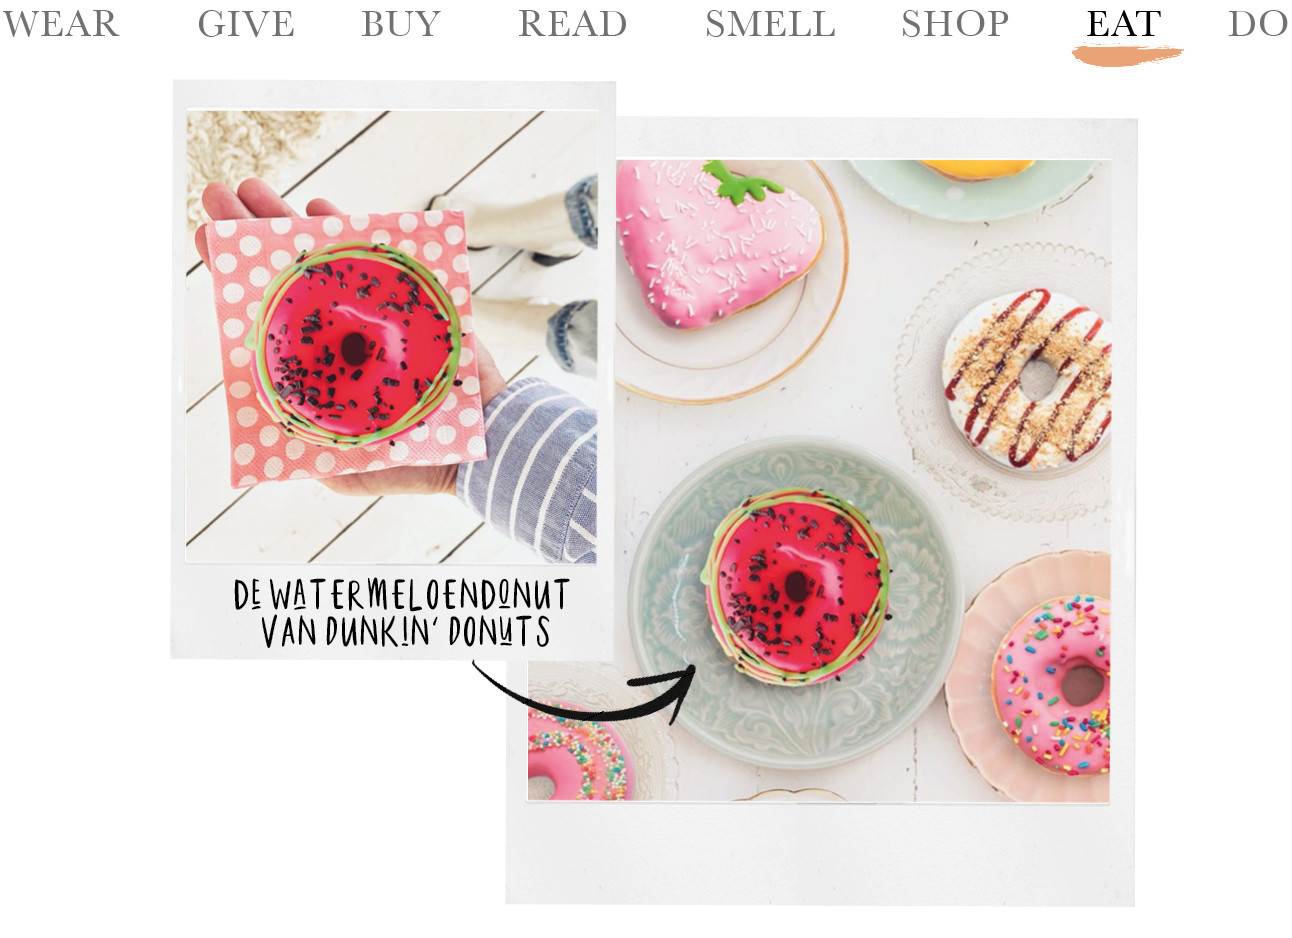 Today we eat de watermeloendonut van Dunkin‘ Donuts